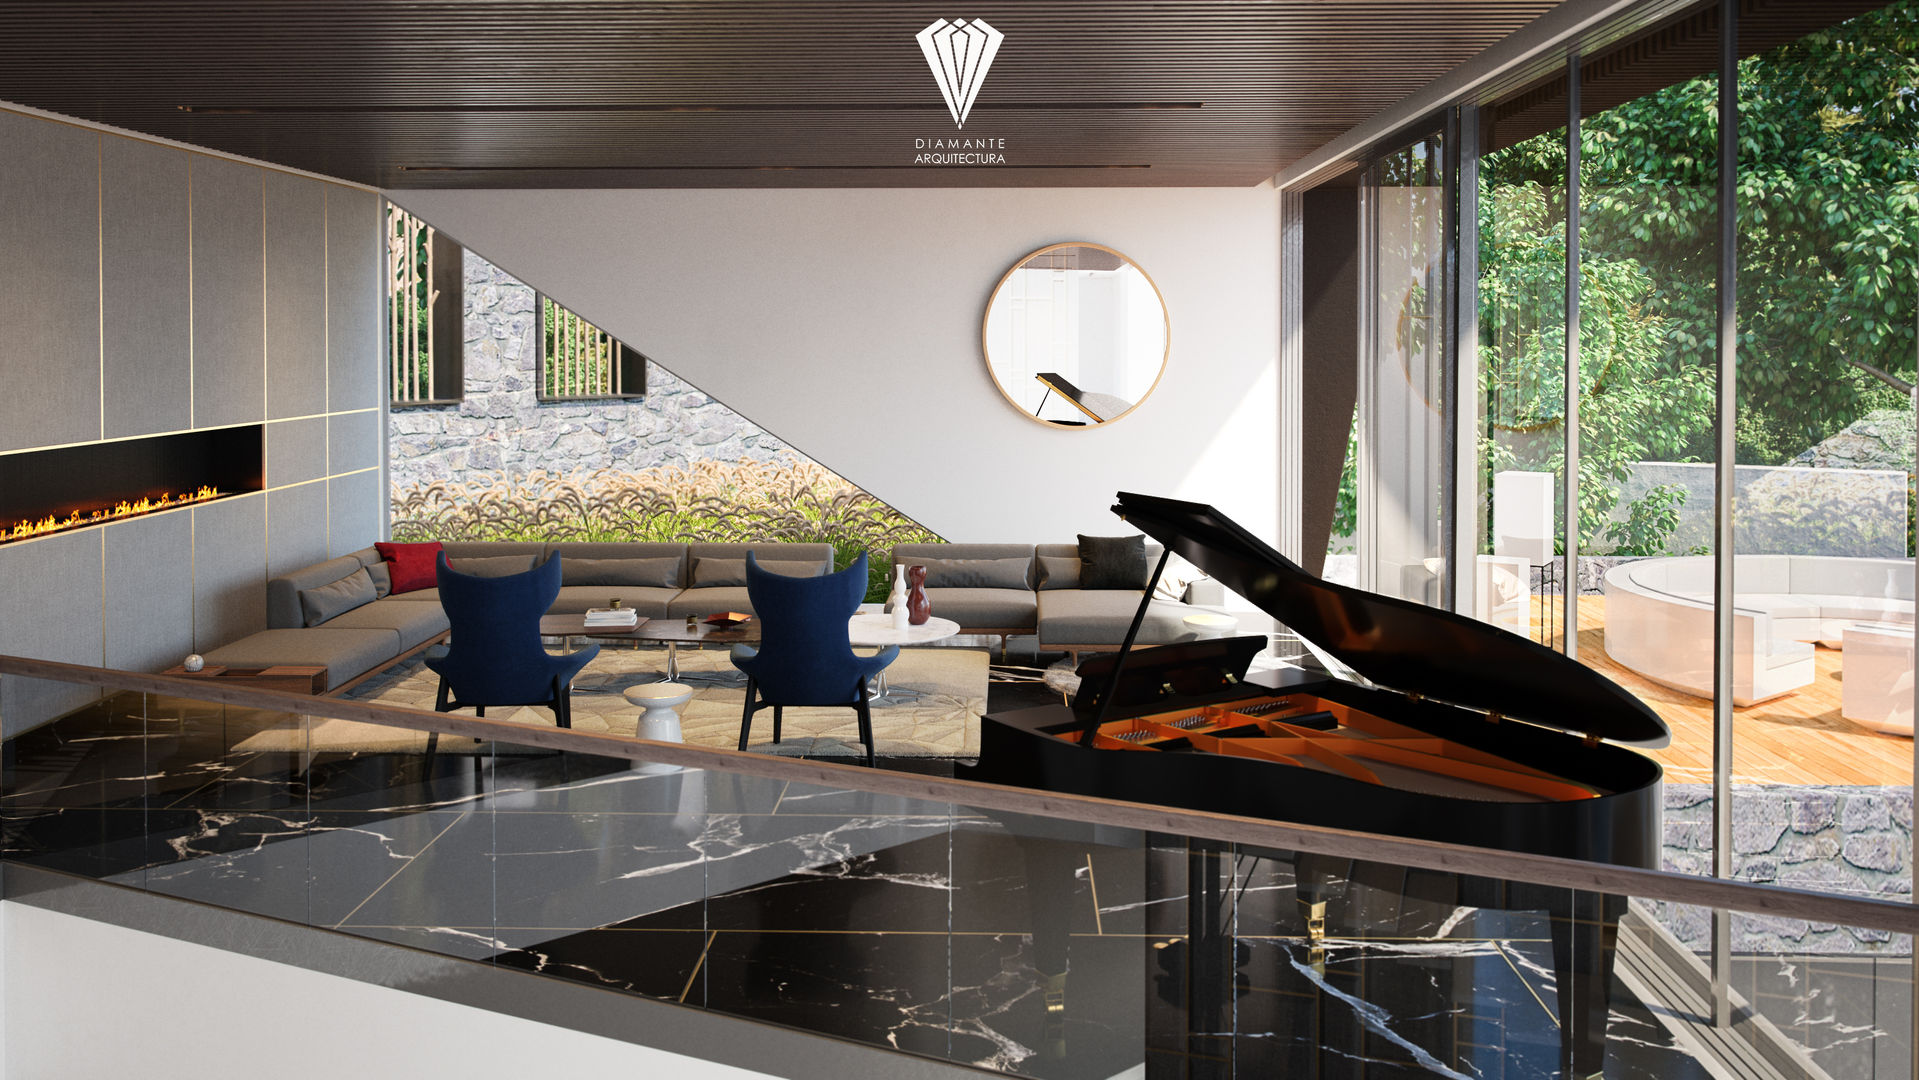 Sala de estar Diamante Arquitectura Salones de estilo moderno